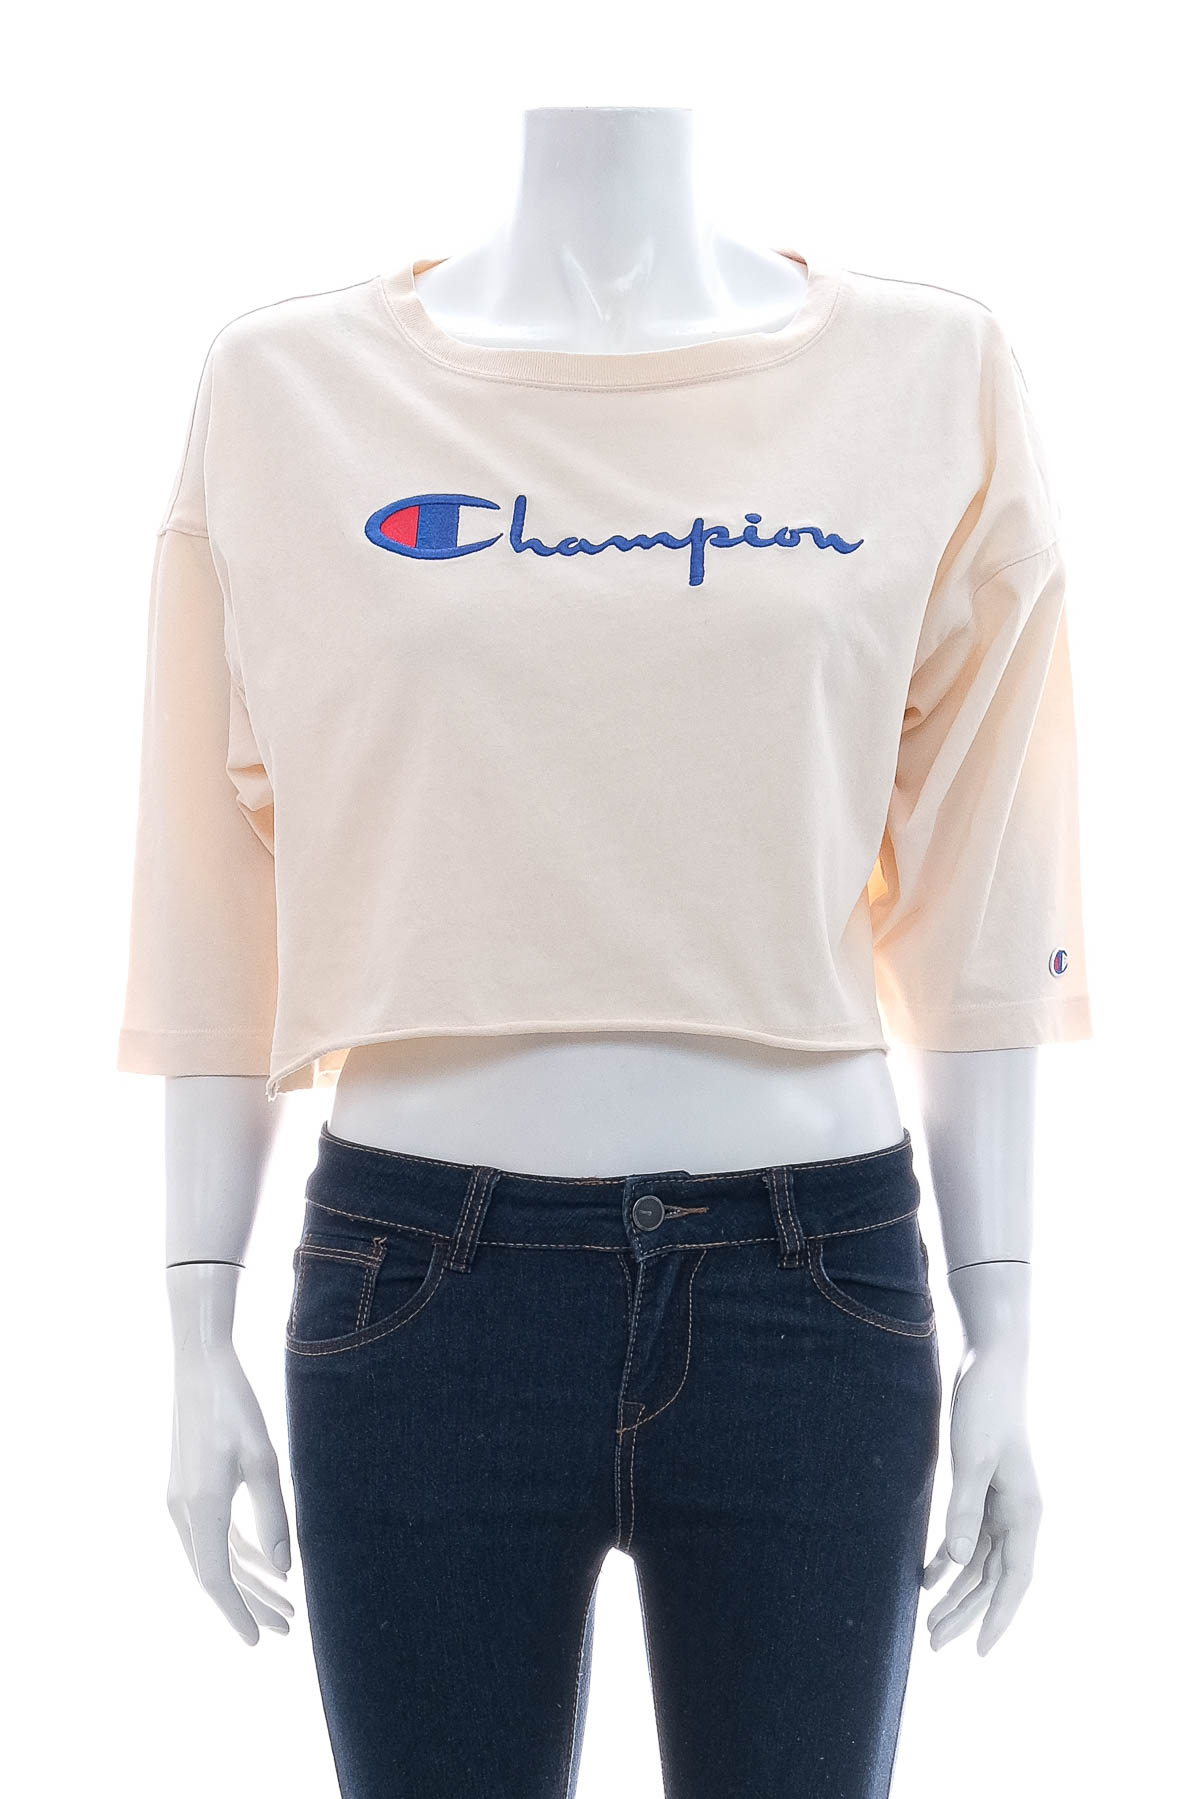 Γυναικεία μπλούζα - Champion - 0